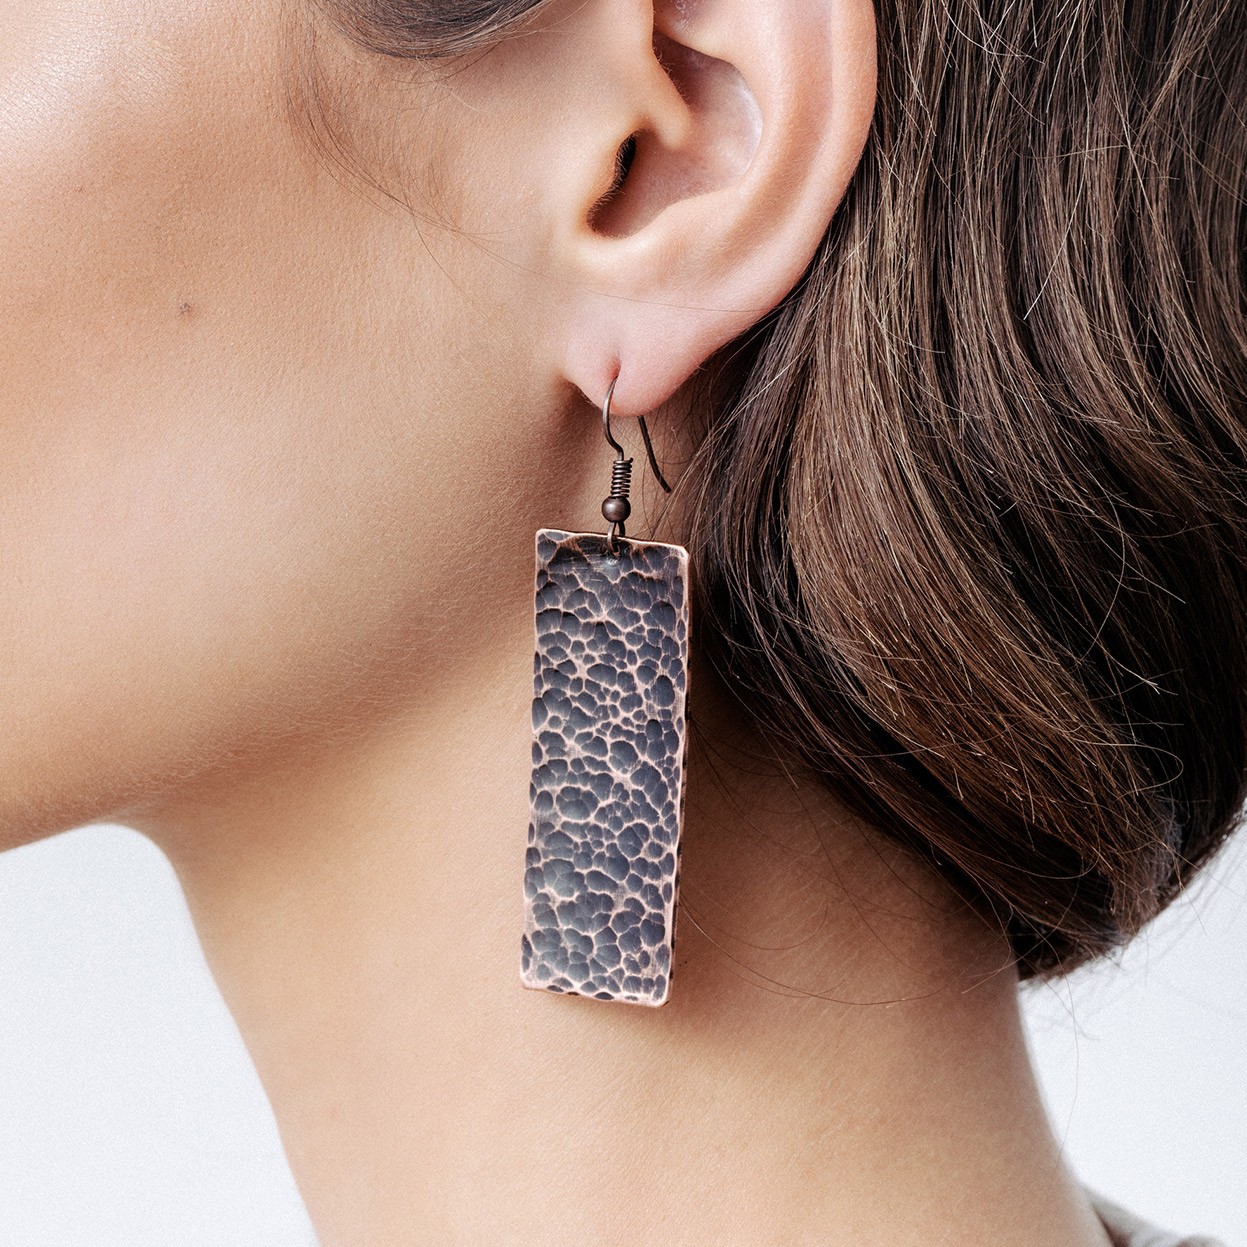 Copper earrings with cross shape